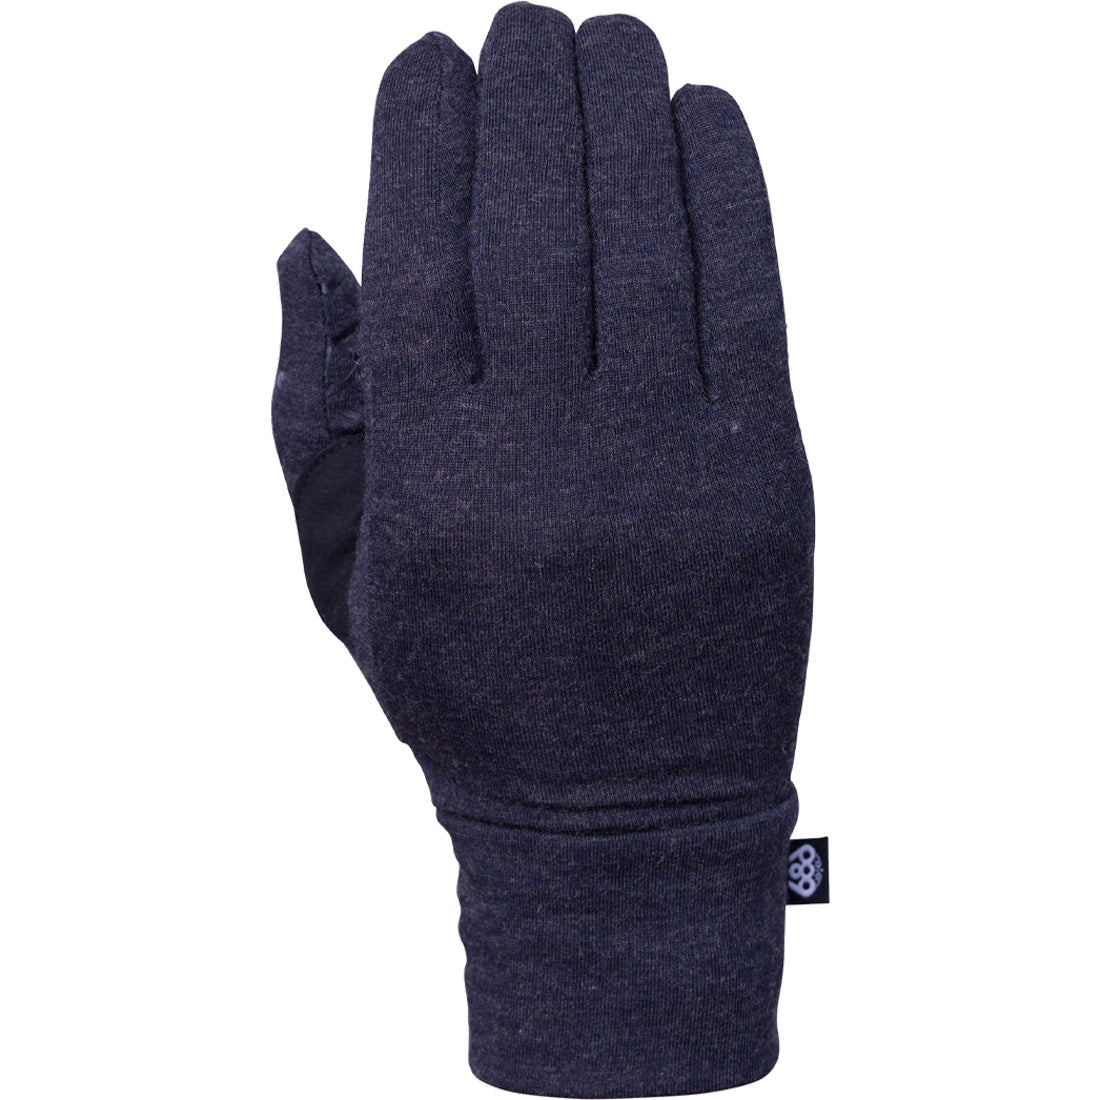 686 Merino Glove Liner - Women's